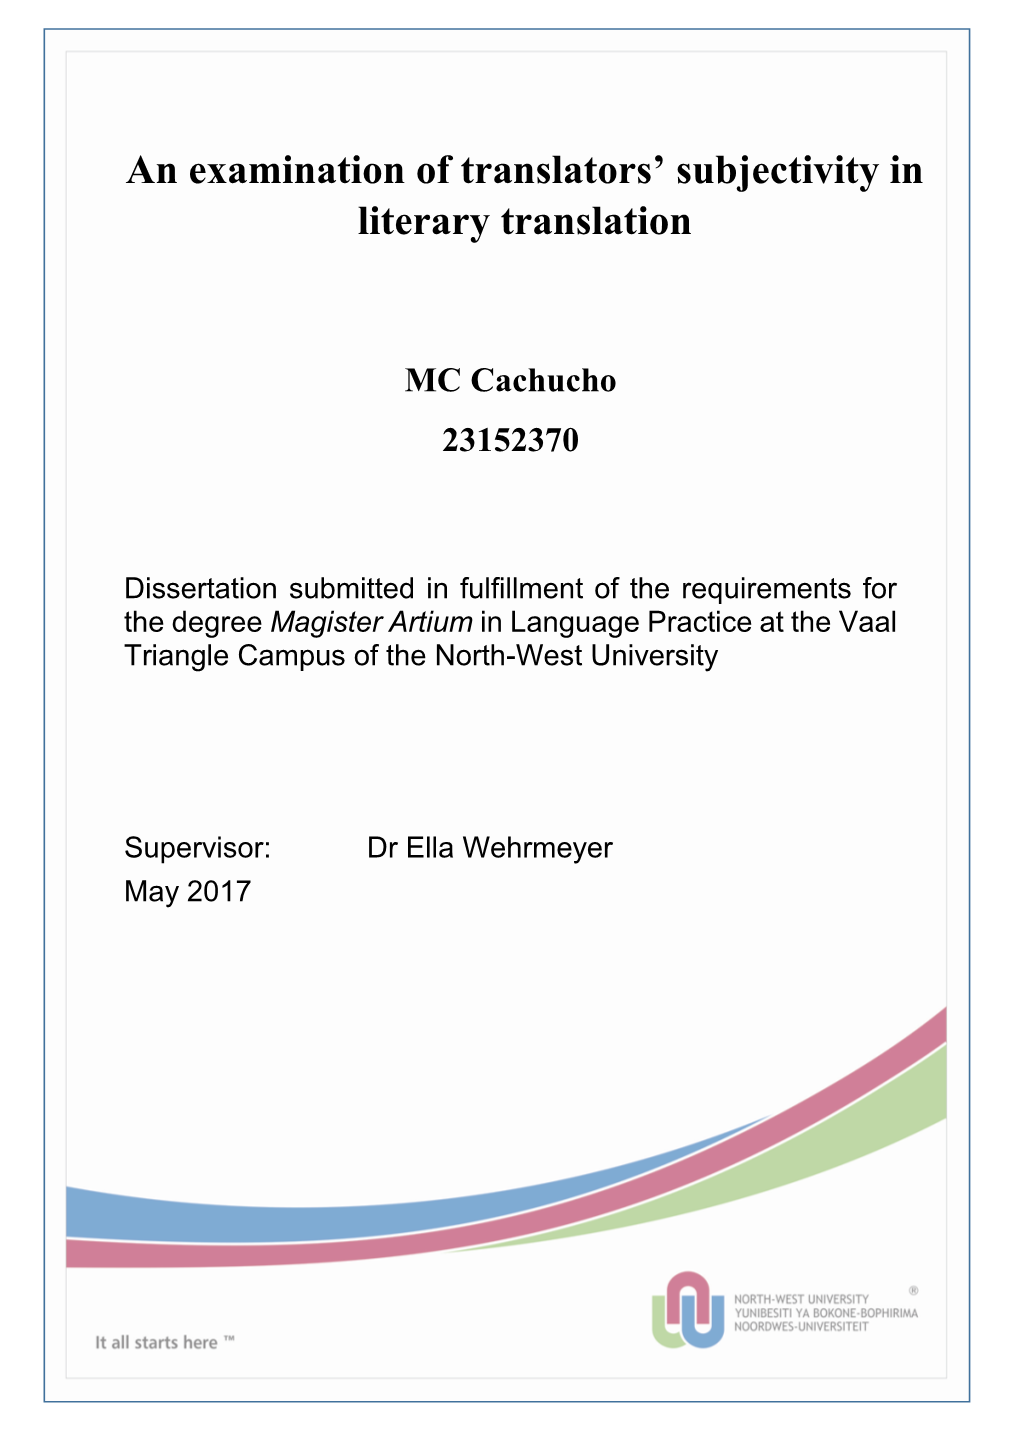 An Examination of Translators' Subjectivity in Literary Translation